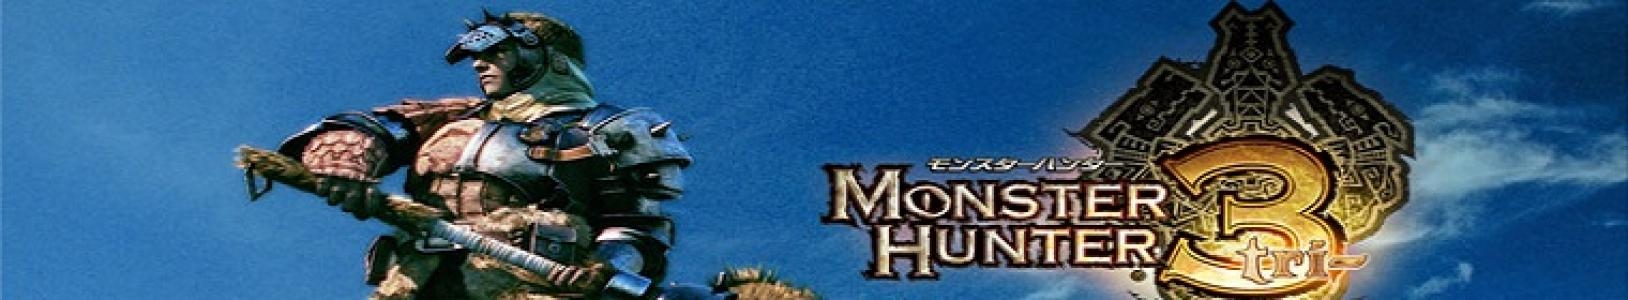 Monster Hunter 3 Tri banner